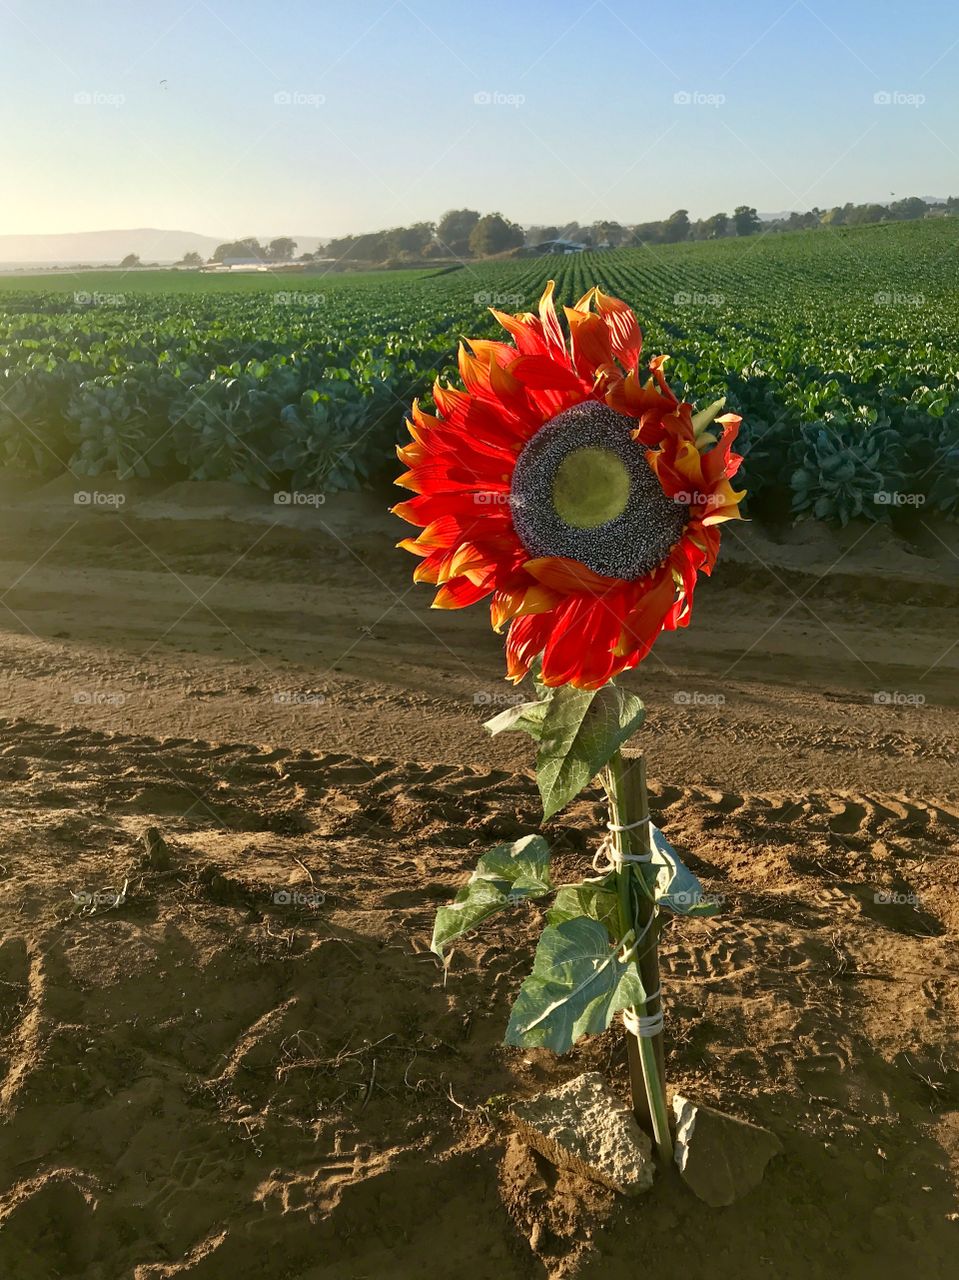 California sunflower.